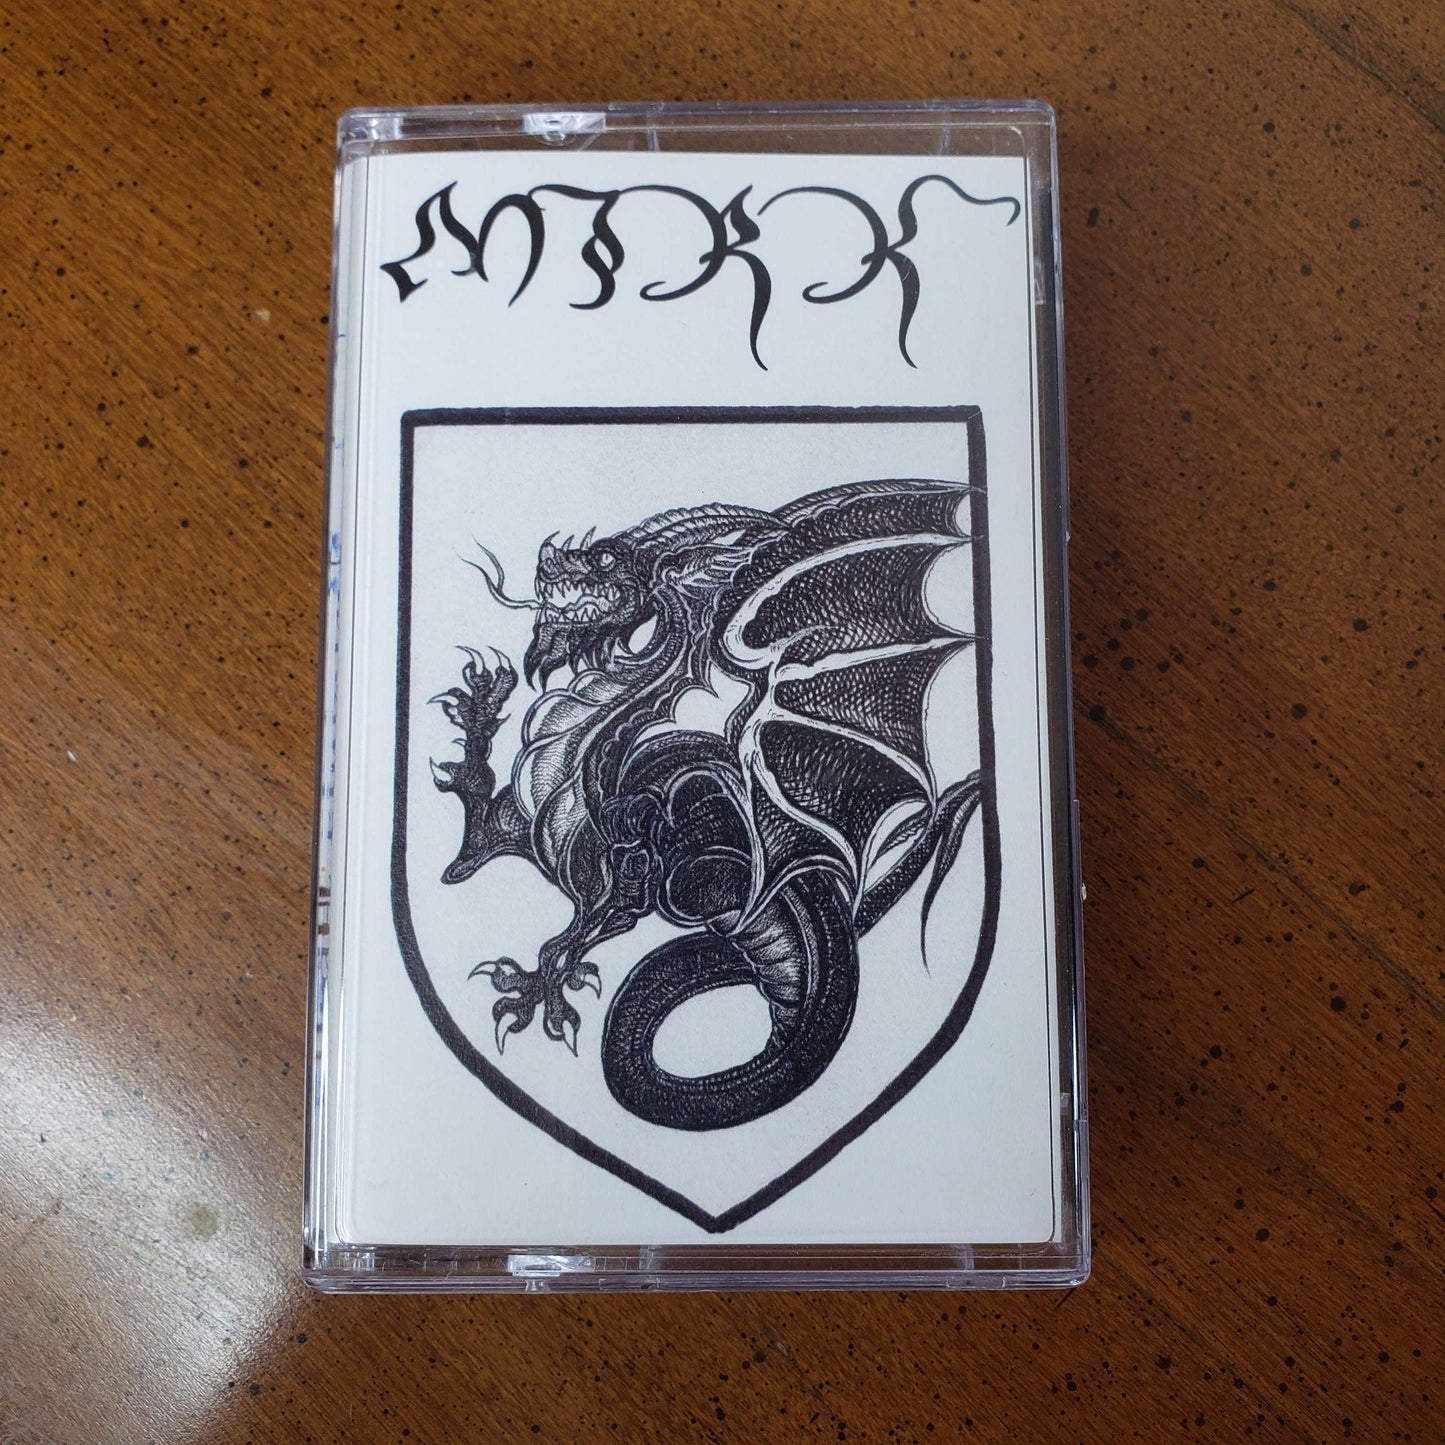 Mirk - Yersinia Pestis cassette tape